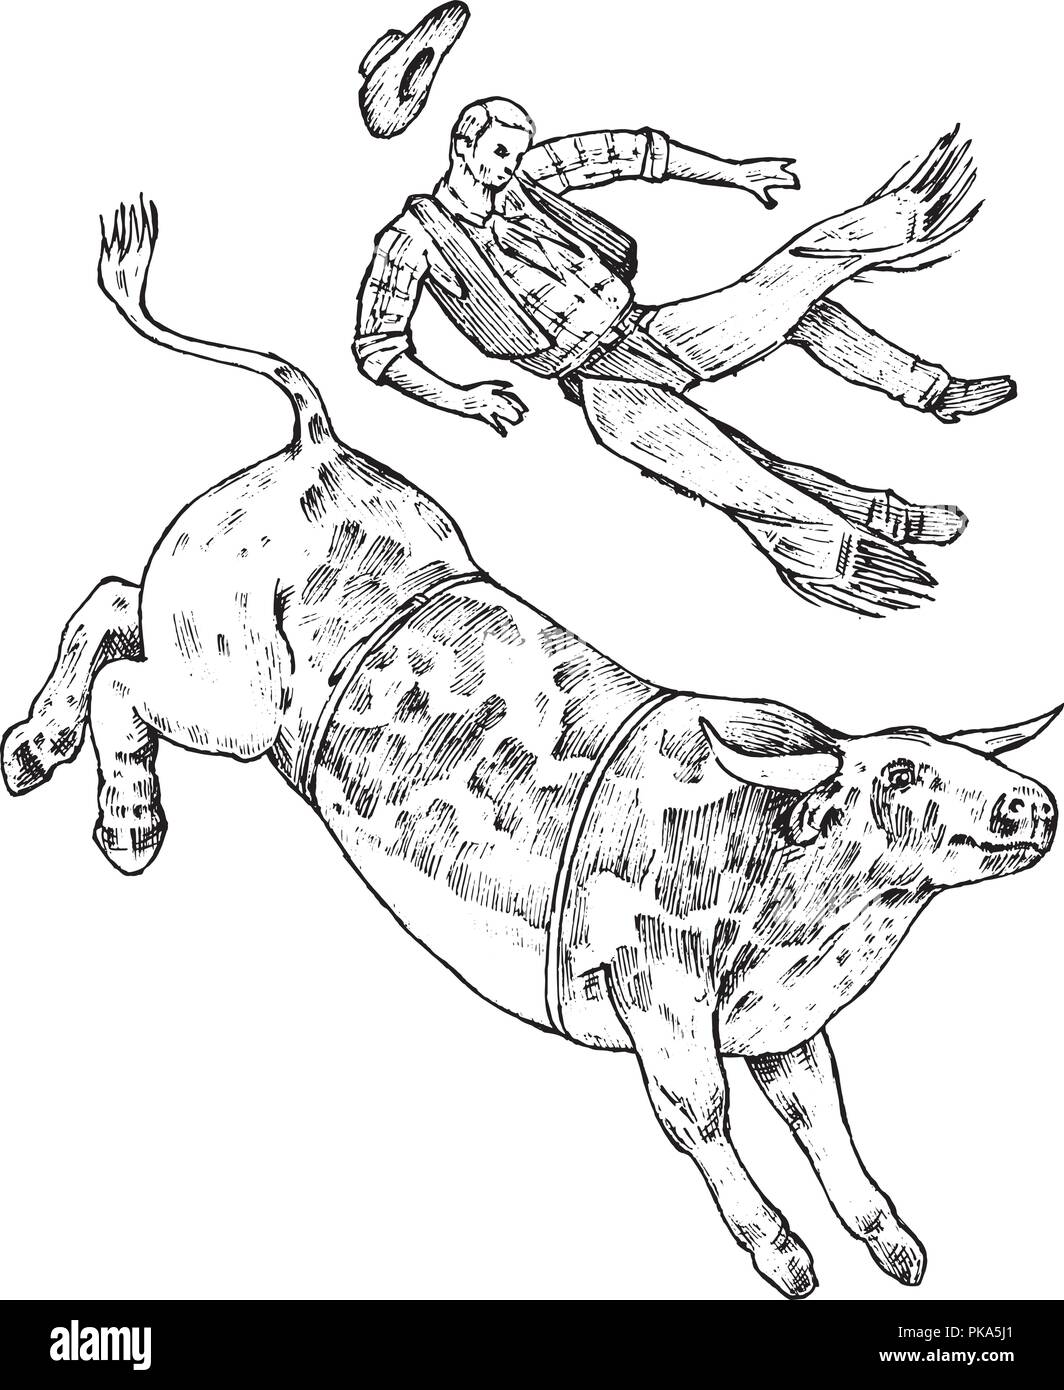 Enraged bull attacca il matador o torero. Corrida de toros. Spagnolo tradizionale delle prestazioni. In stile vintage. Incisi disegnati a mano il vecchio sketch. Illustrazione Vettoriale. Illustrazione Vettoriale